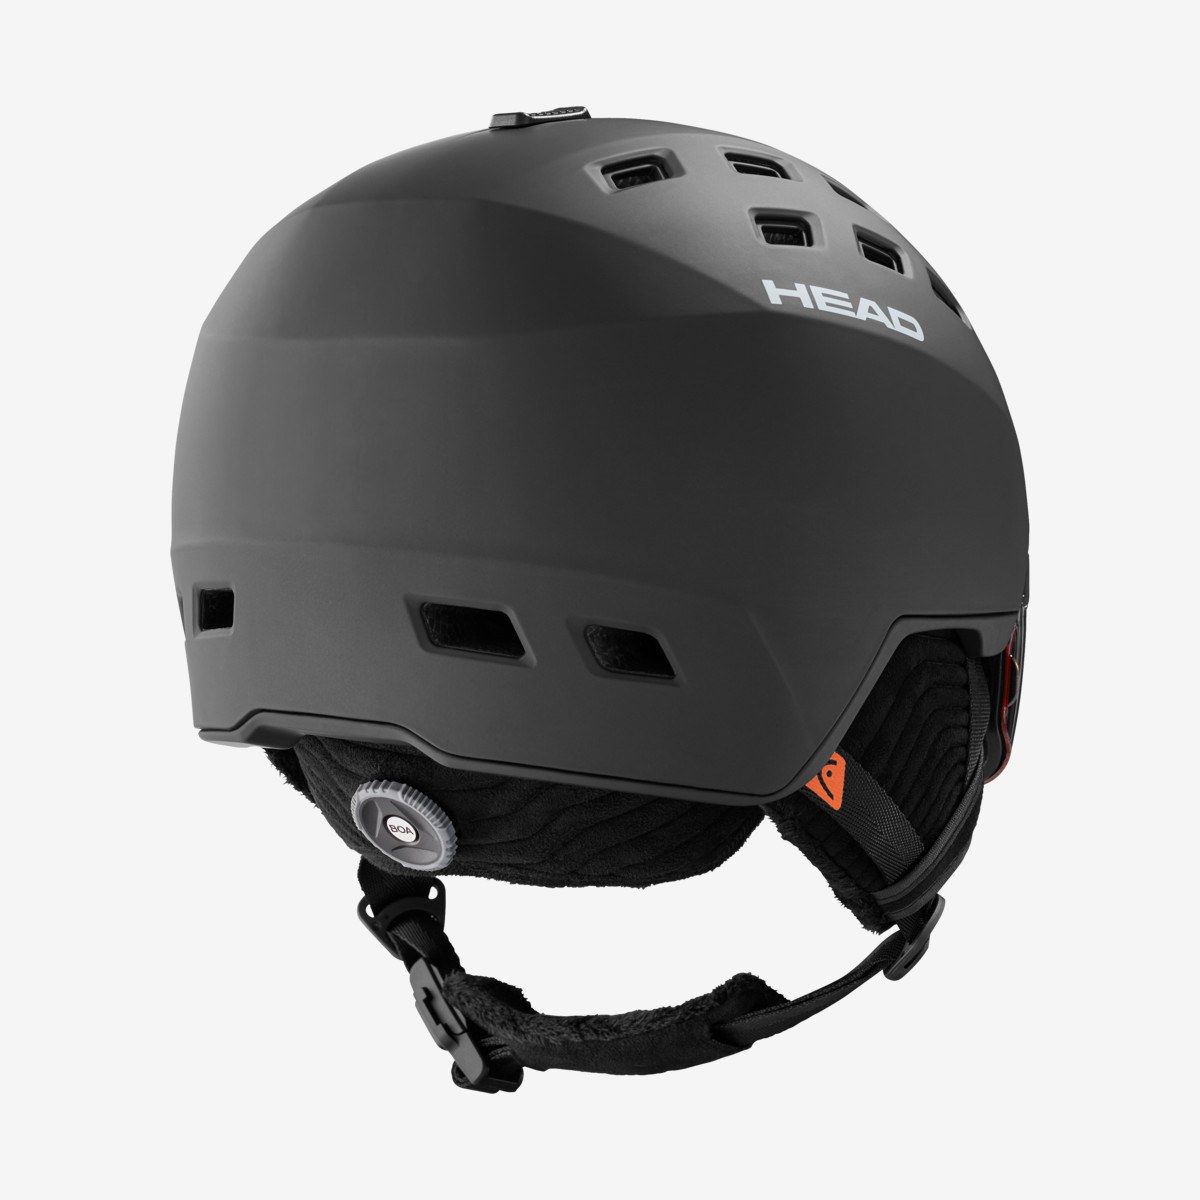 Ski Visor Helmet -  head RADAR 5K VISOR SKI HELMET + SPARE LENS